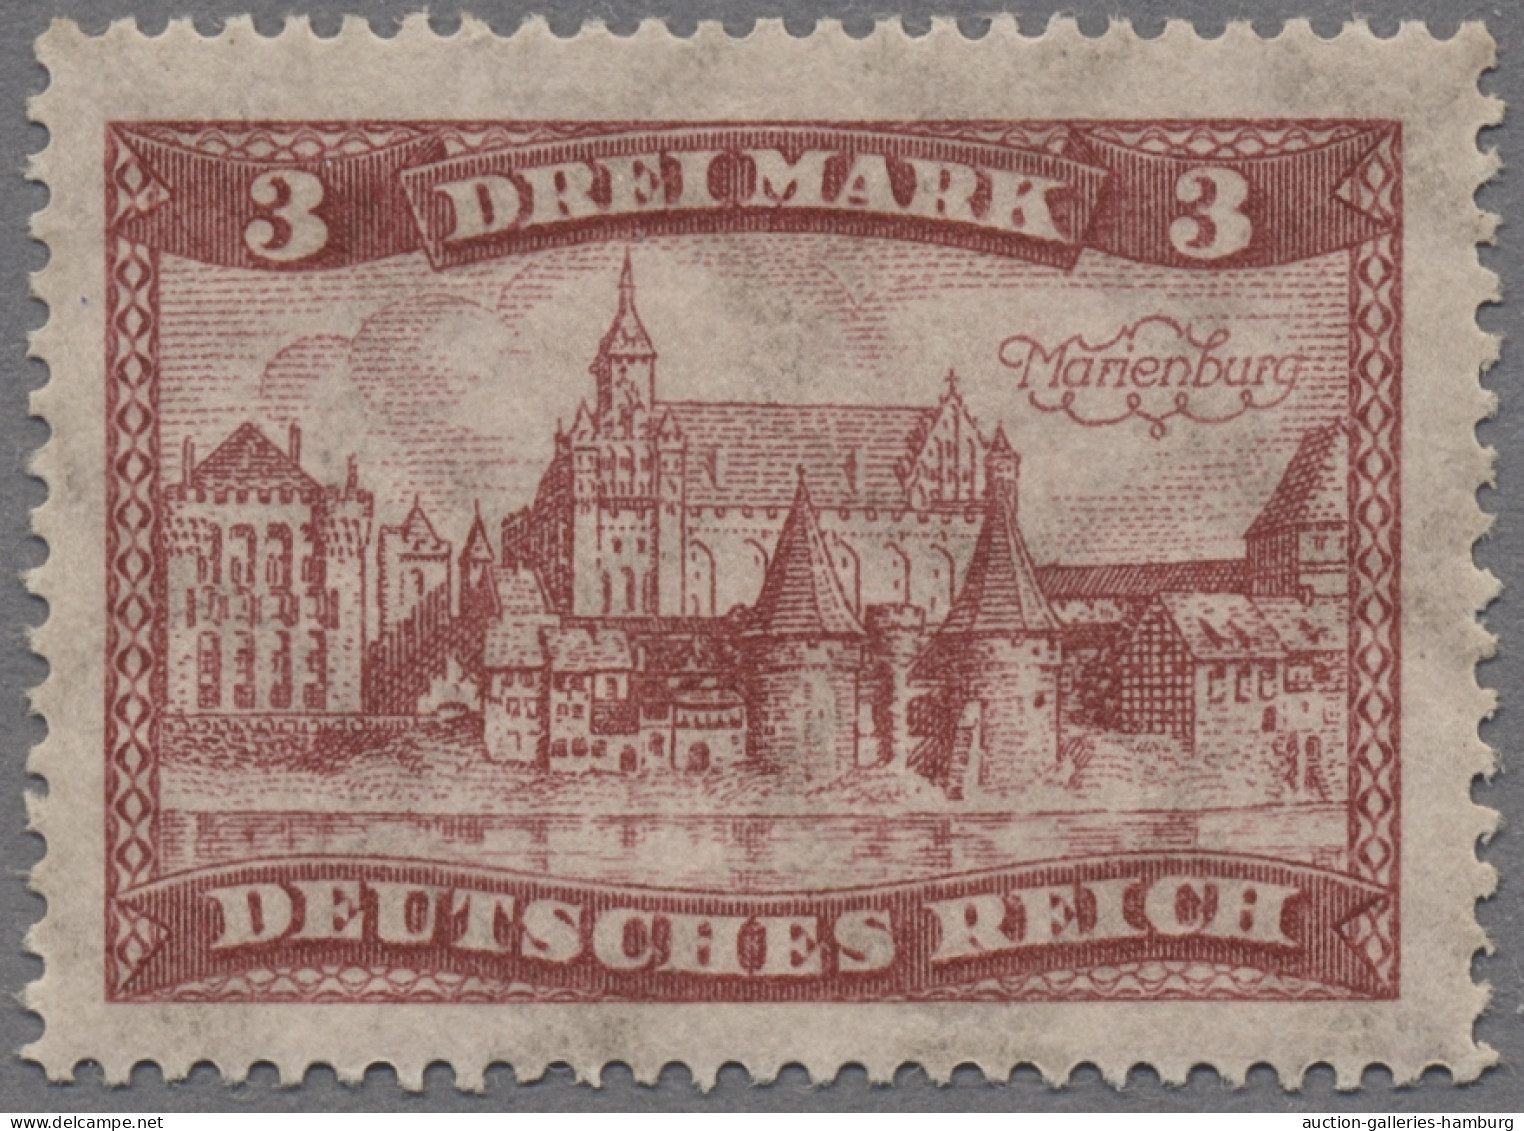 Deutsches Reich - Weimar: 1924, Bauwerke, der komplette Satz 1 Mark (Wz. X) bis